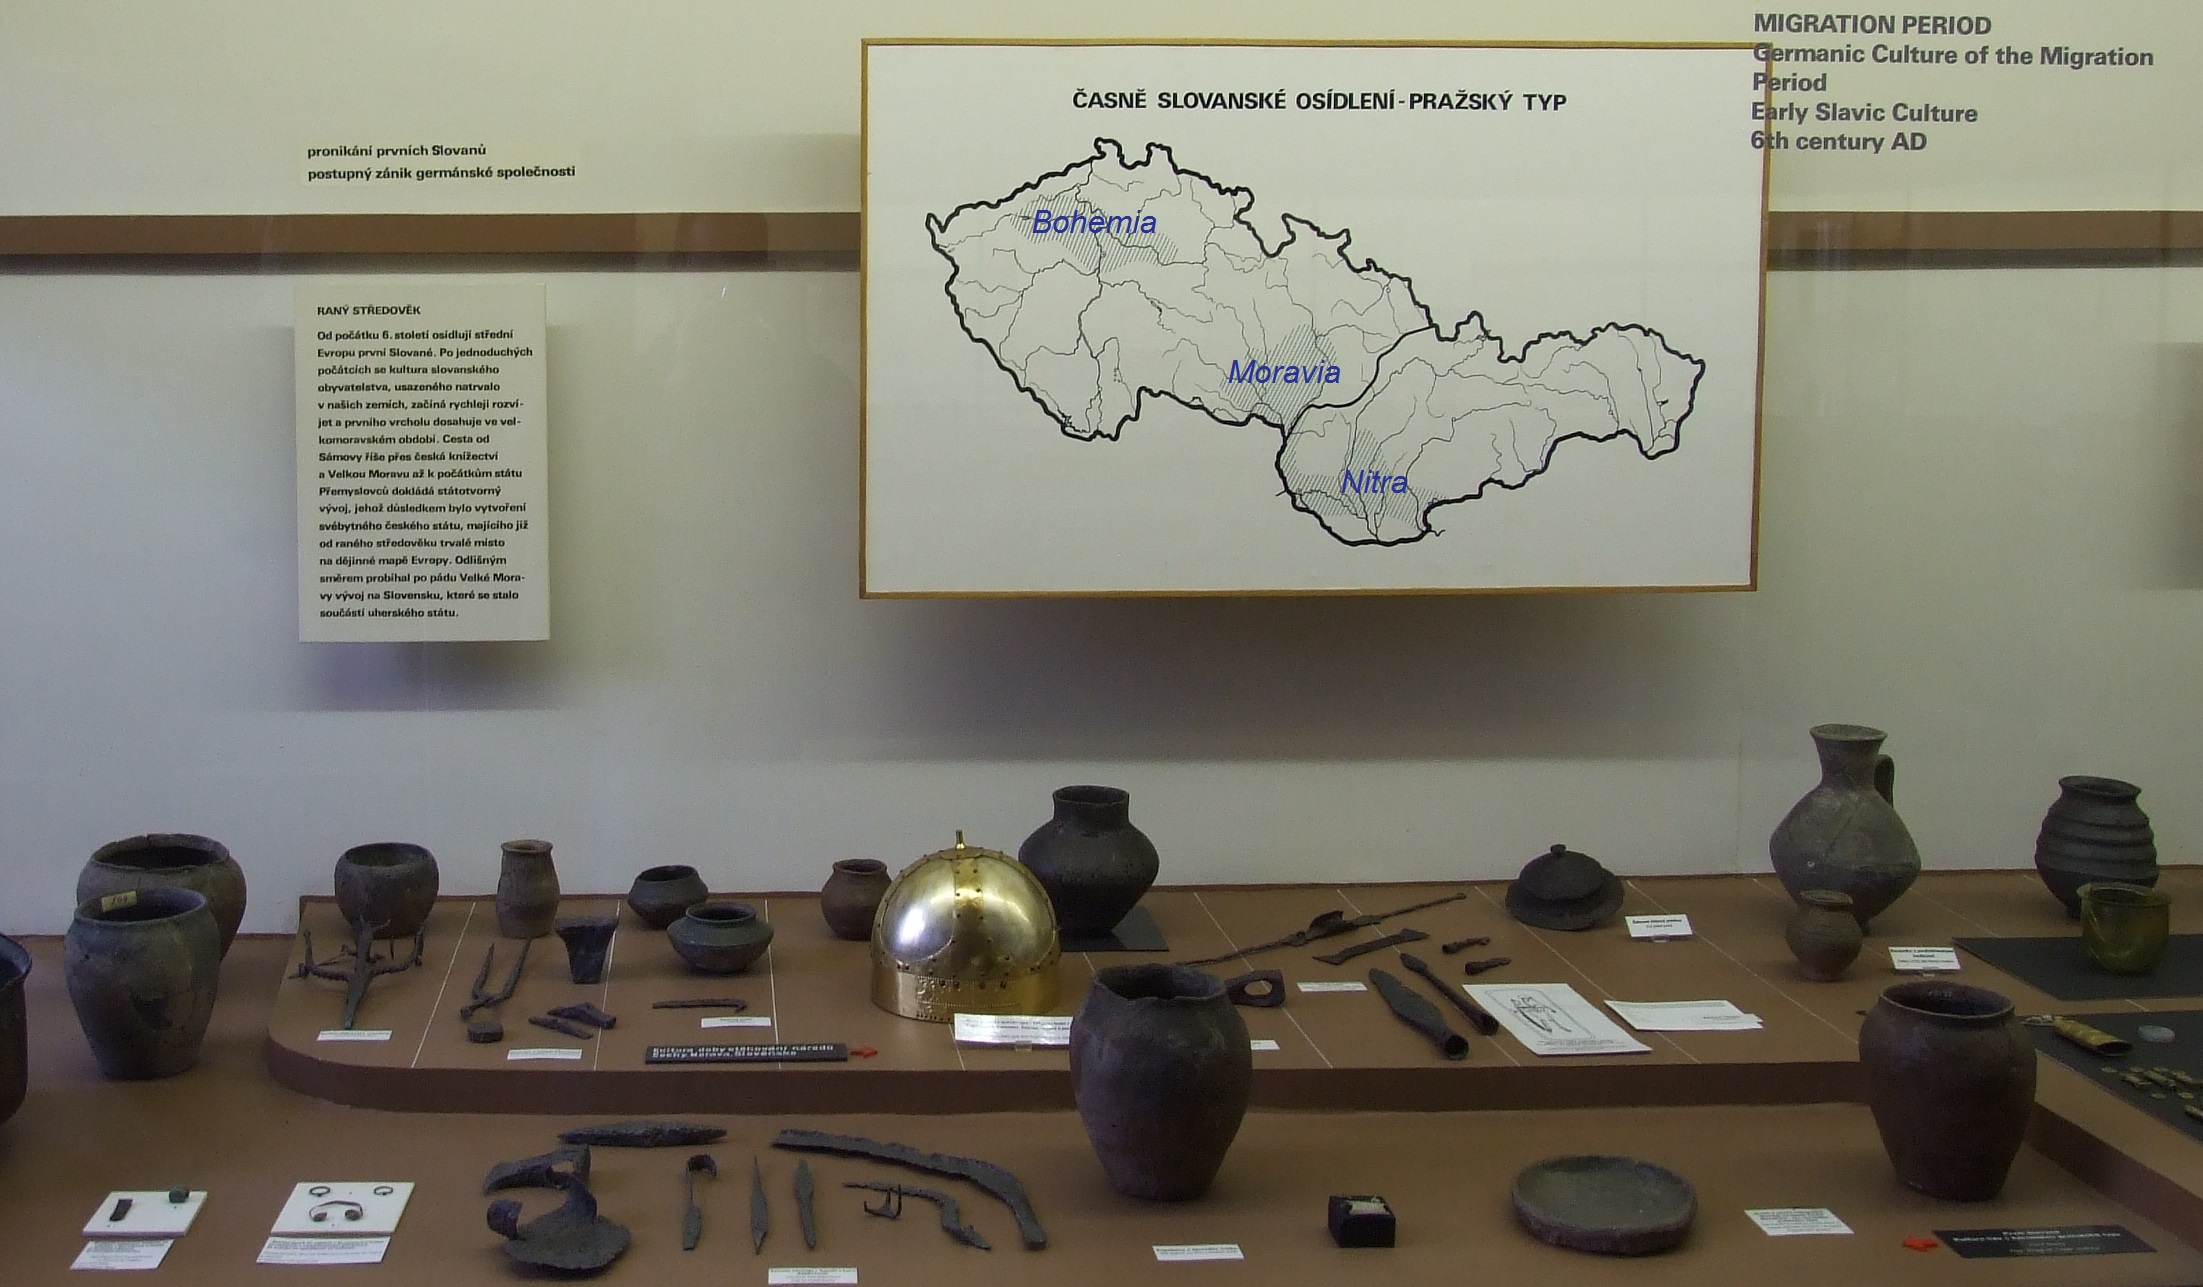 Находки 5-6 века из Богемии, Моравии и Нитры. Среди керамики - горшки пражского типа